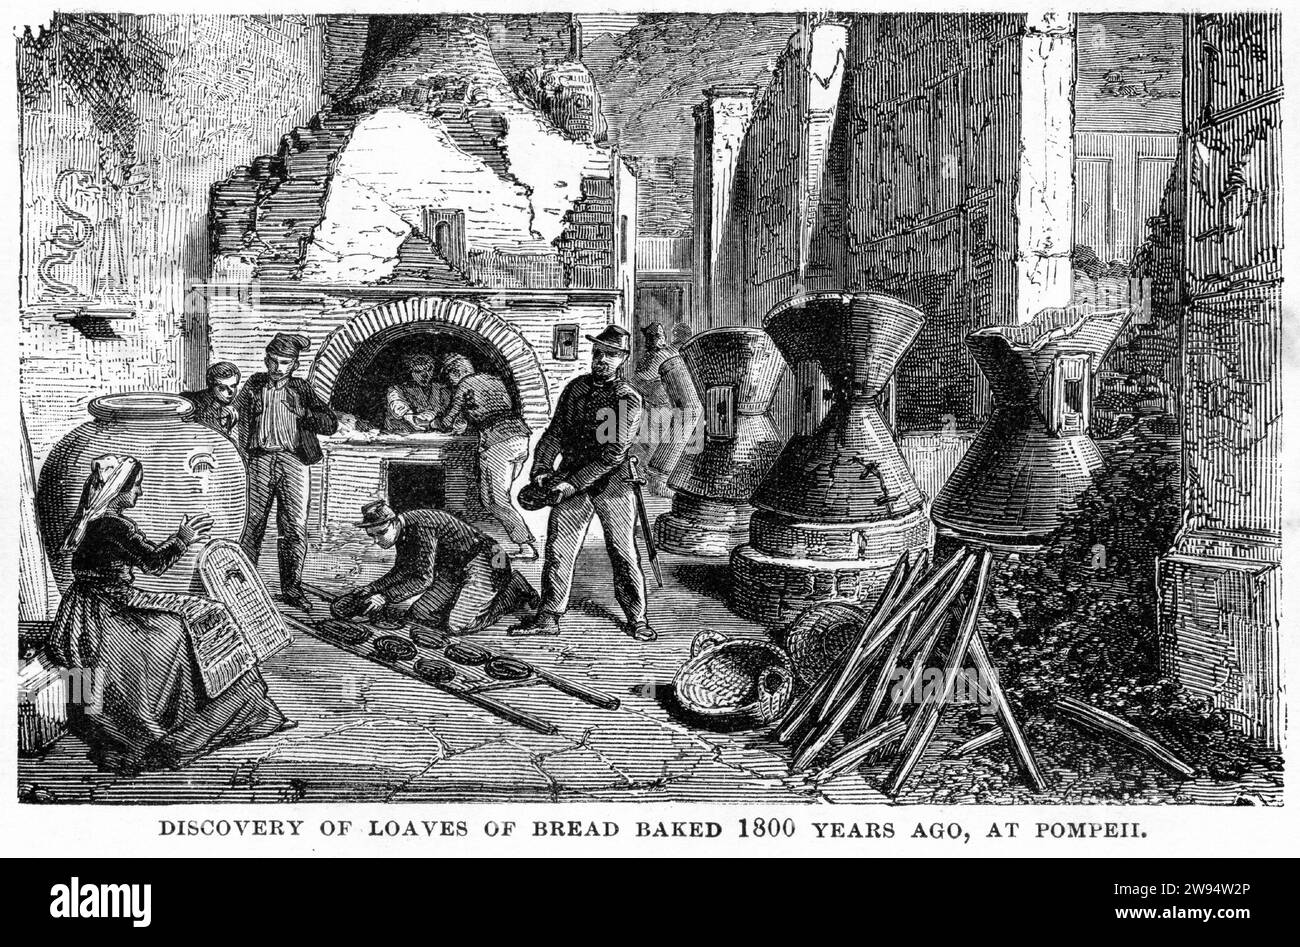 Incisione della scoperta del pane cotto a Pompei che era stato sepolto 1800 anni prima, dal mondo sotterraneo, intorno al 1878 Foto Stock